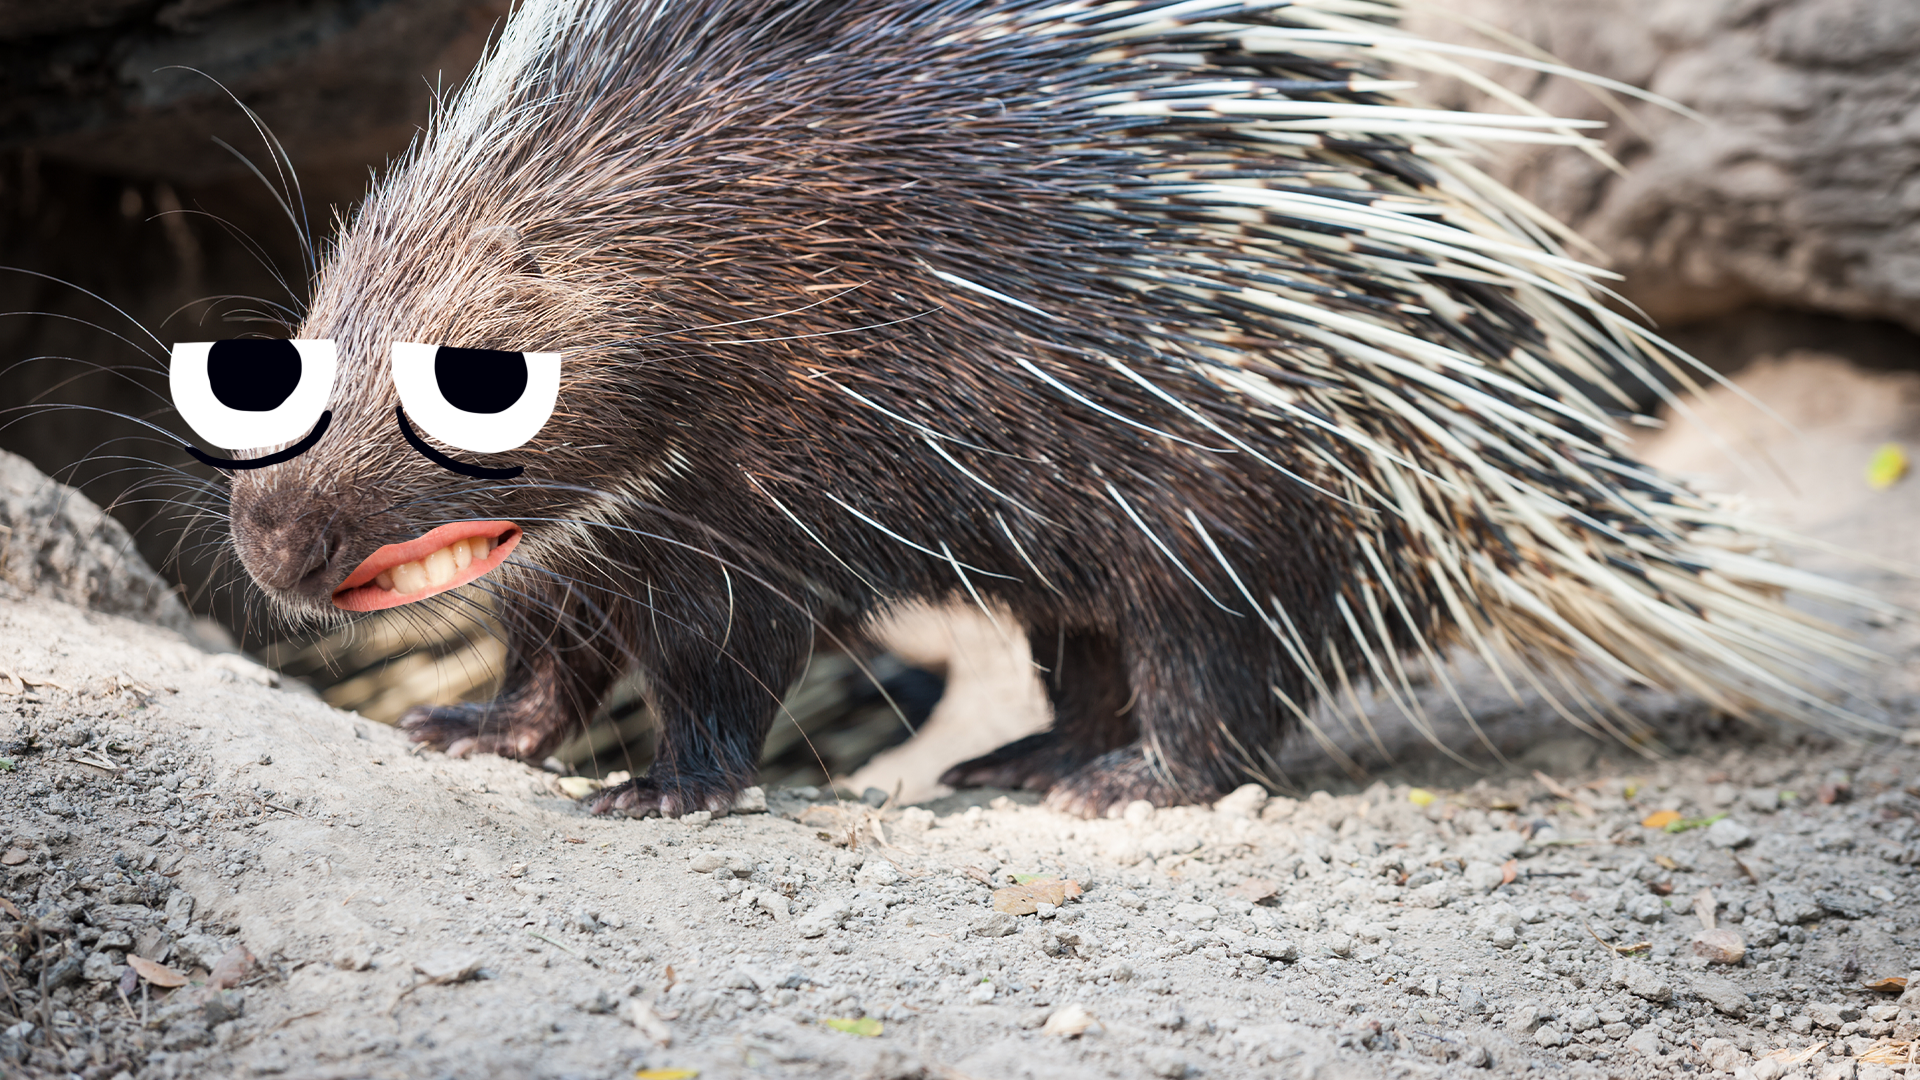 Grumpy looking porcupine